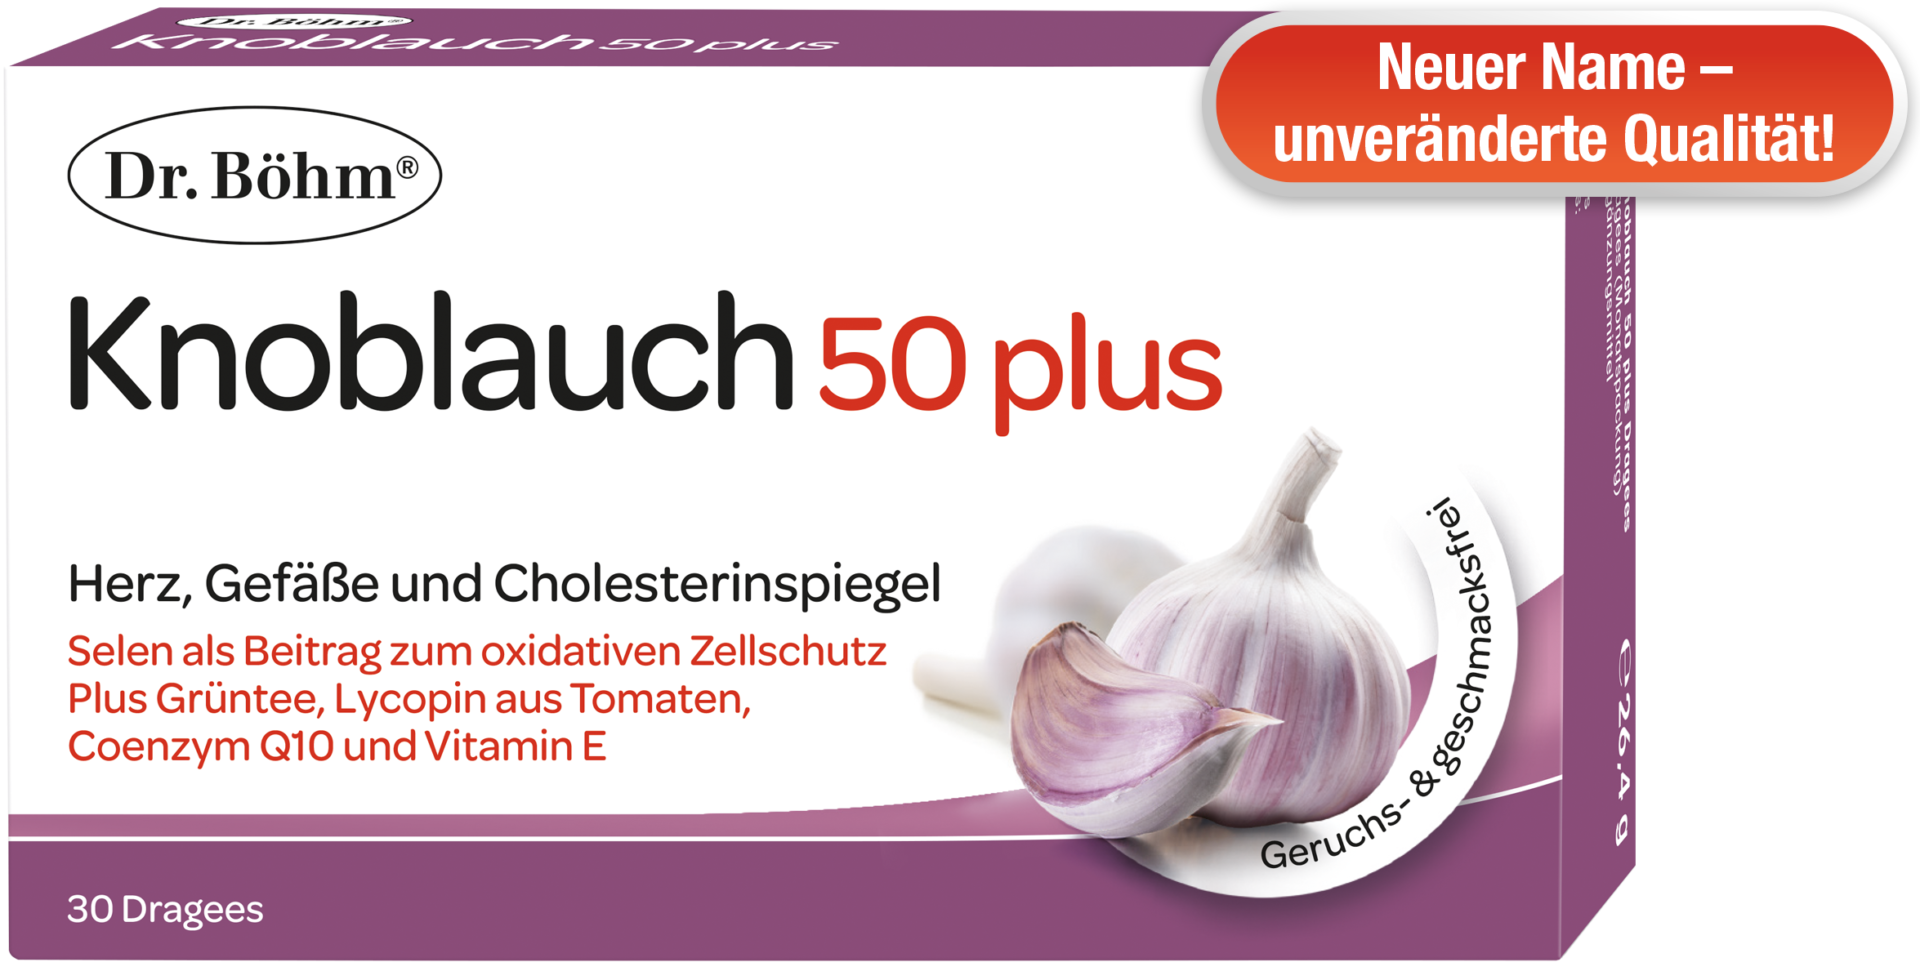 Neuer Name! Dr. Böhm® Knoblauch 50plus, Herz, Gefäße und Cholesterinspiegel